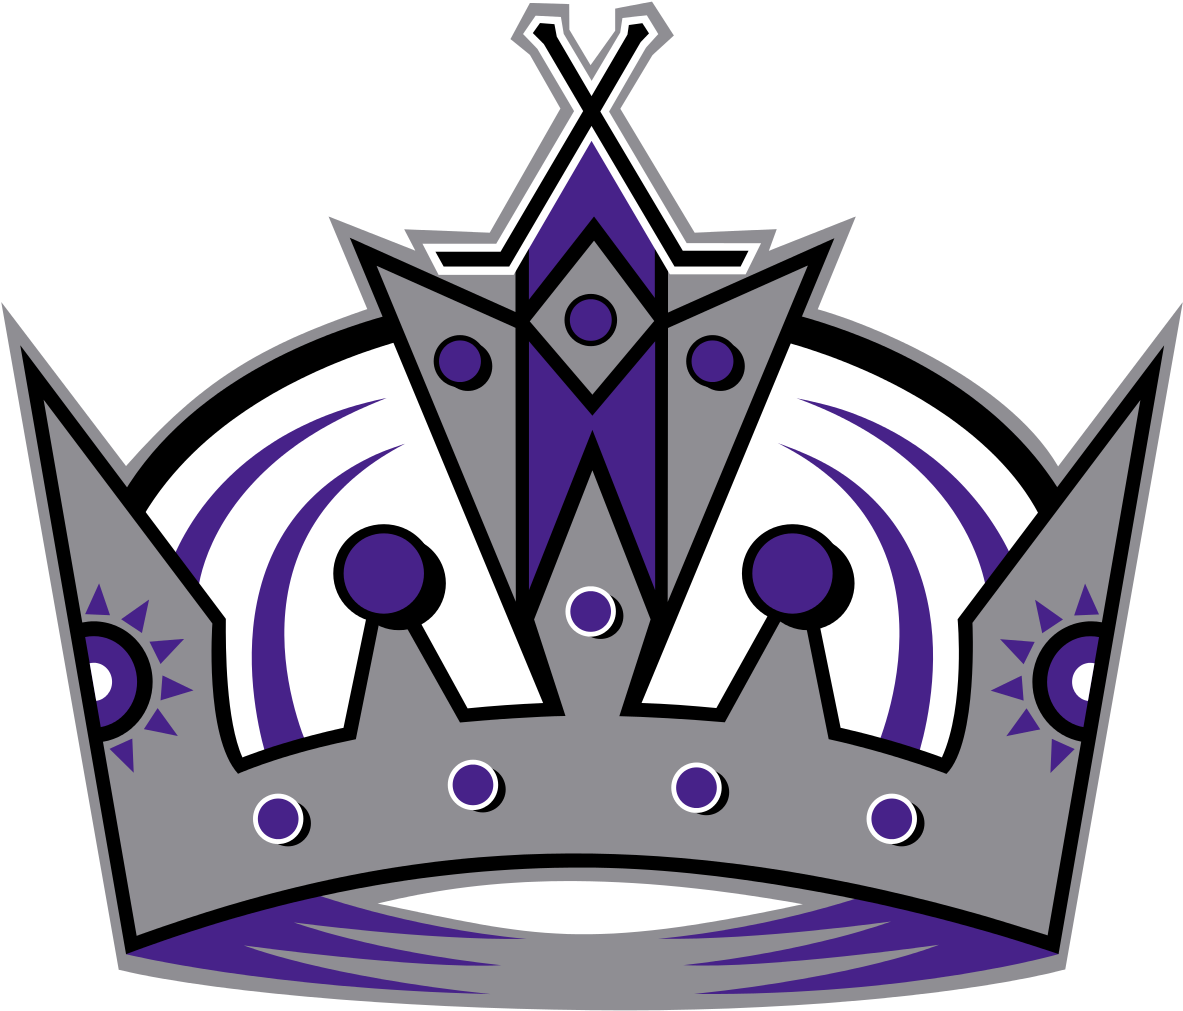 Kings - Los Angeles Kings Old Logo (1192x1024)